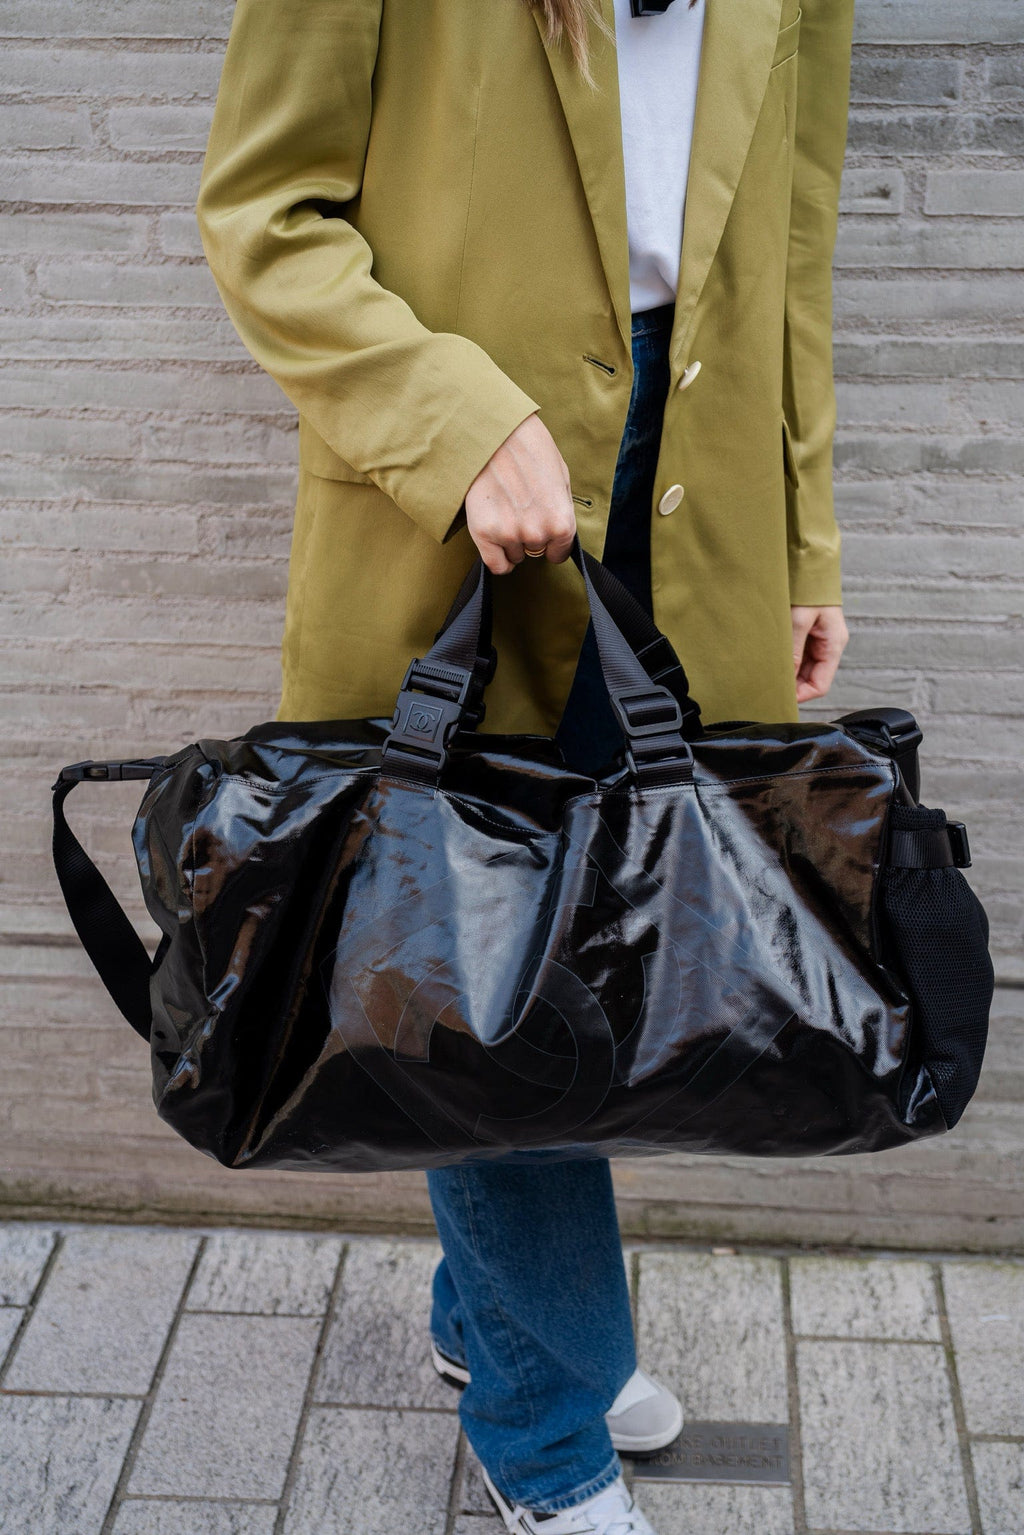 Chanel Black Patent Leather CC Duffle Bag - AGL1867 – LuxuryPromise